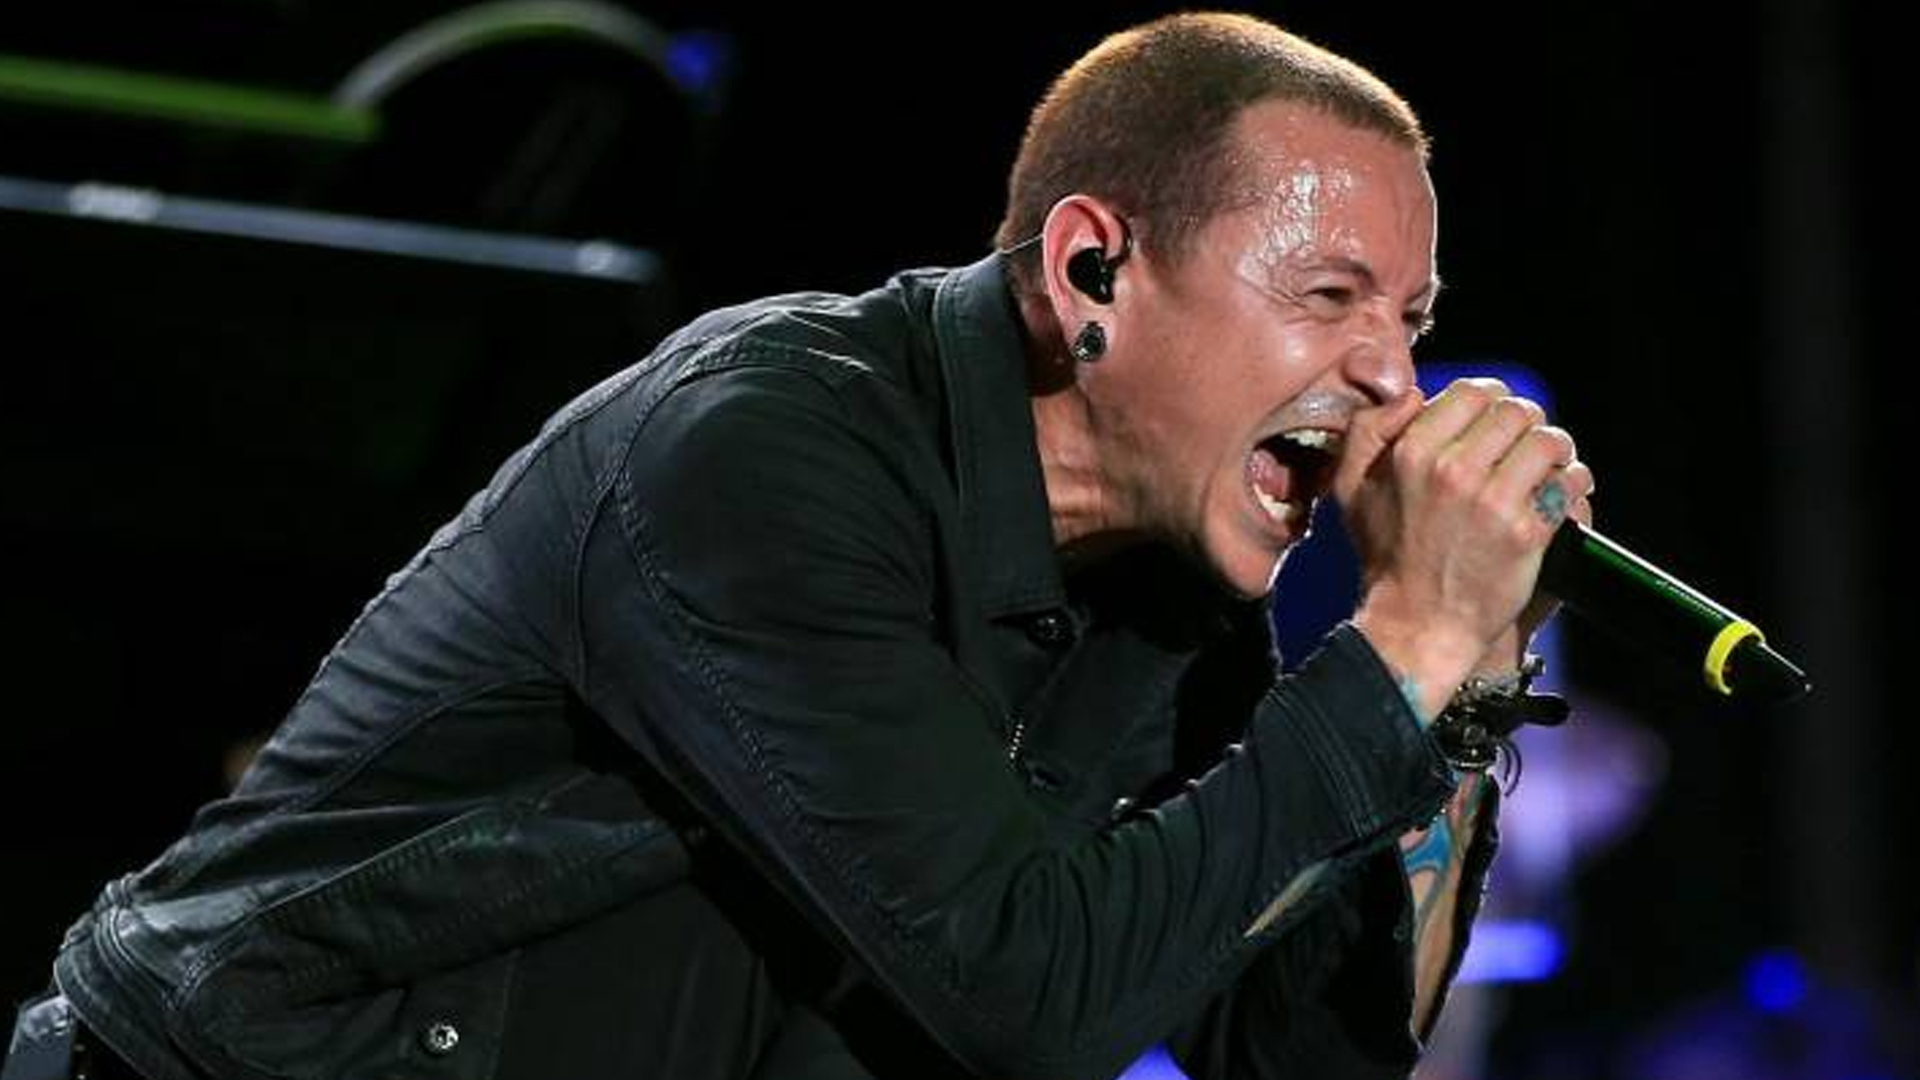 Fallecido cantante de Linkin Park